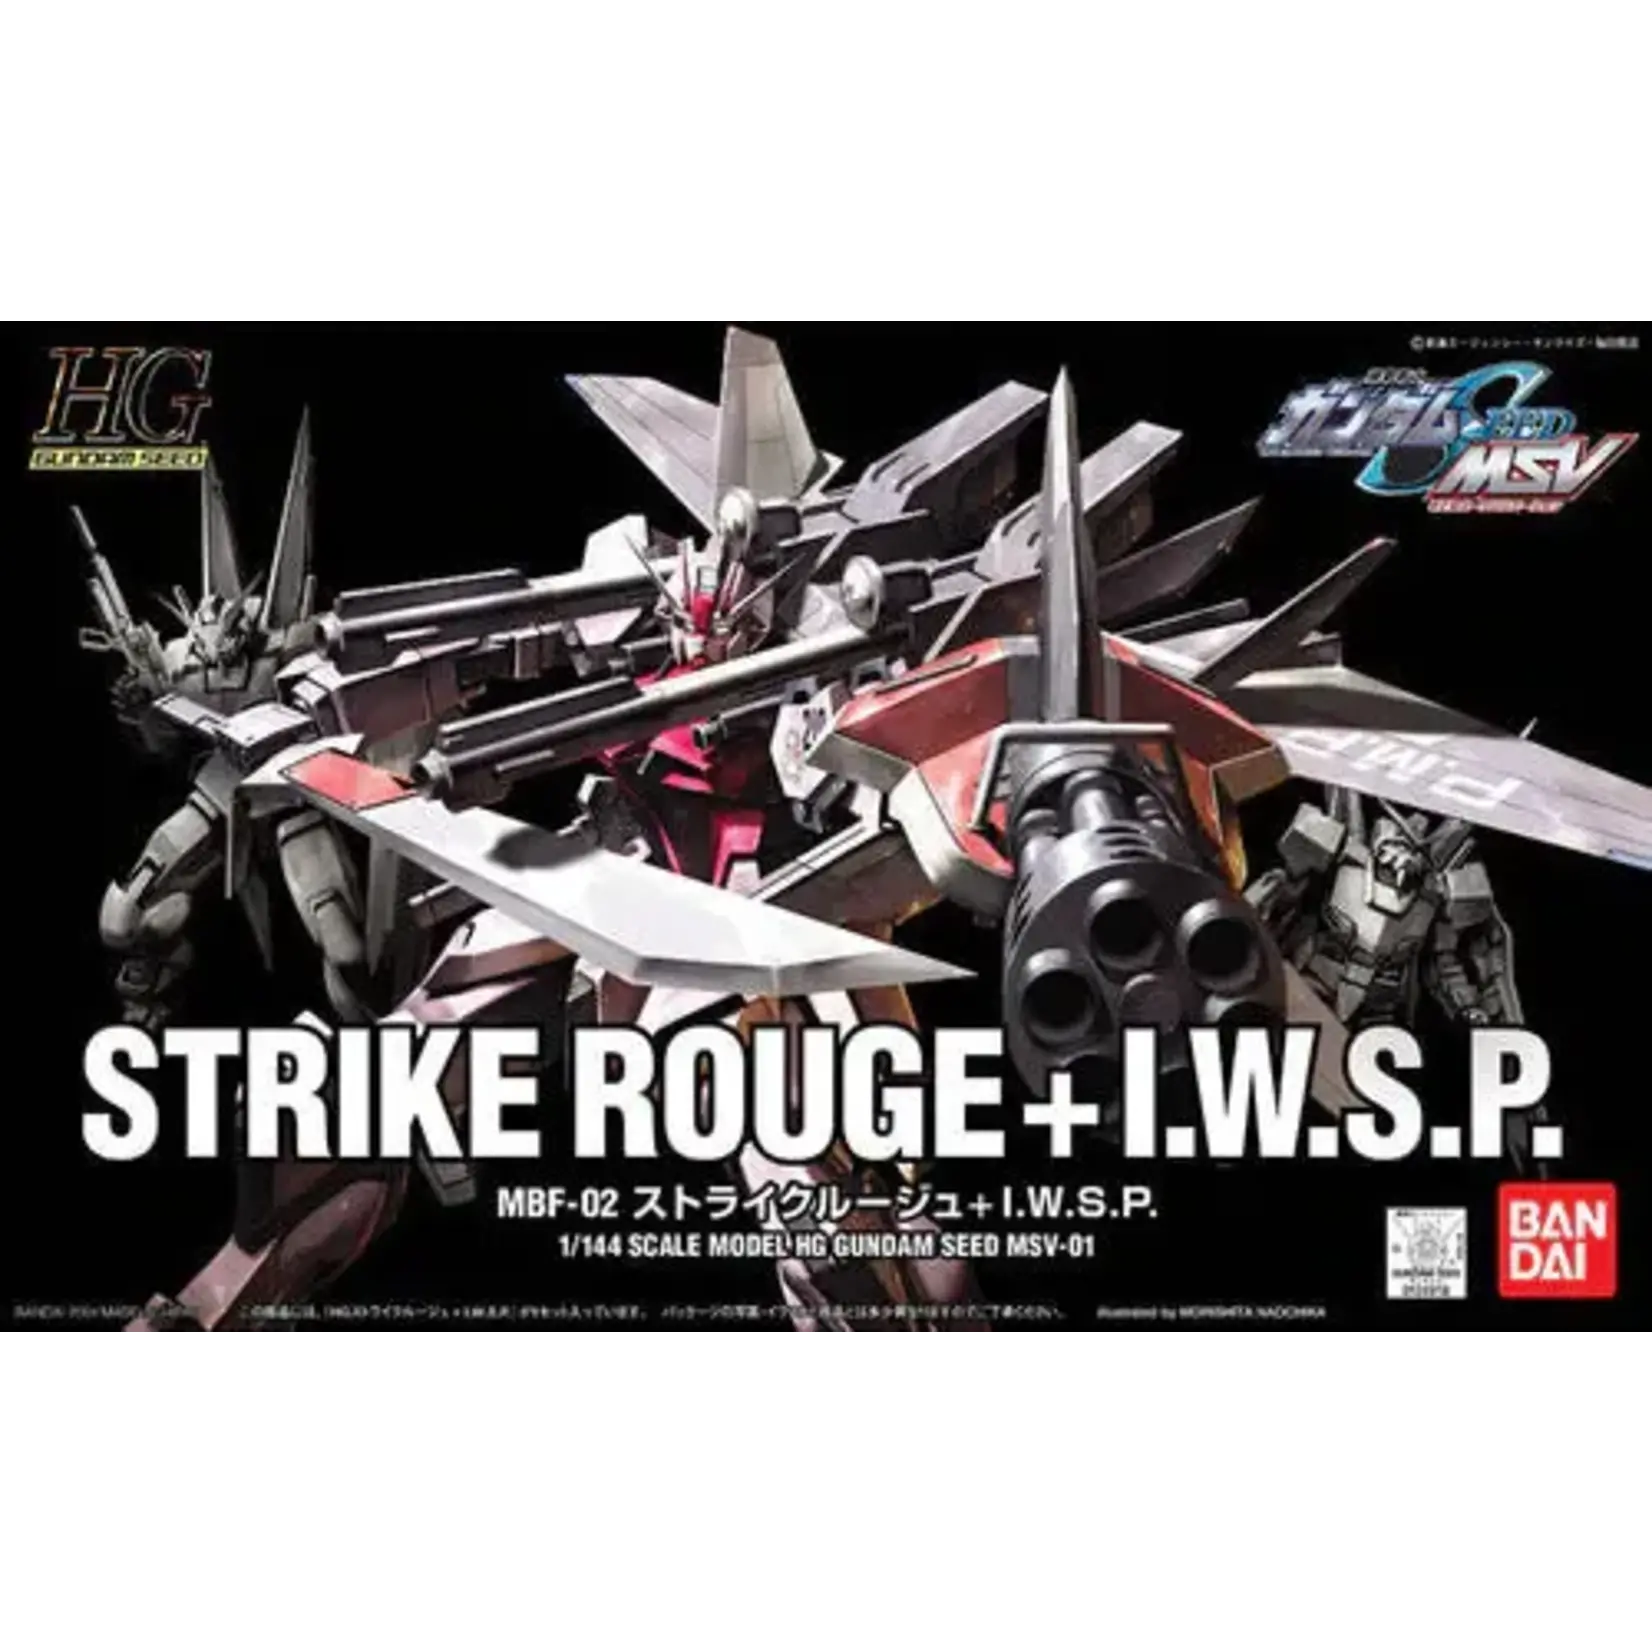 Bandai Bandai 1124918 HG MSV #1 Strike Rouge + IWSP "Gundam SEED"